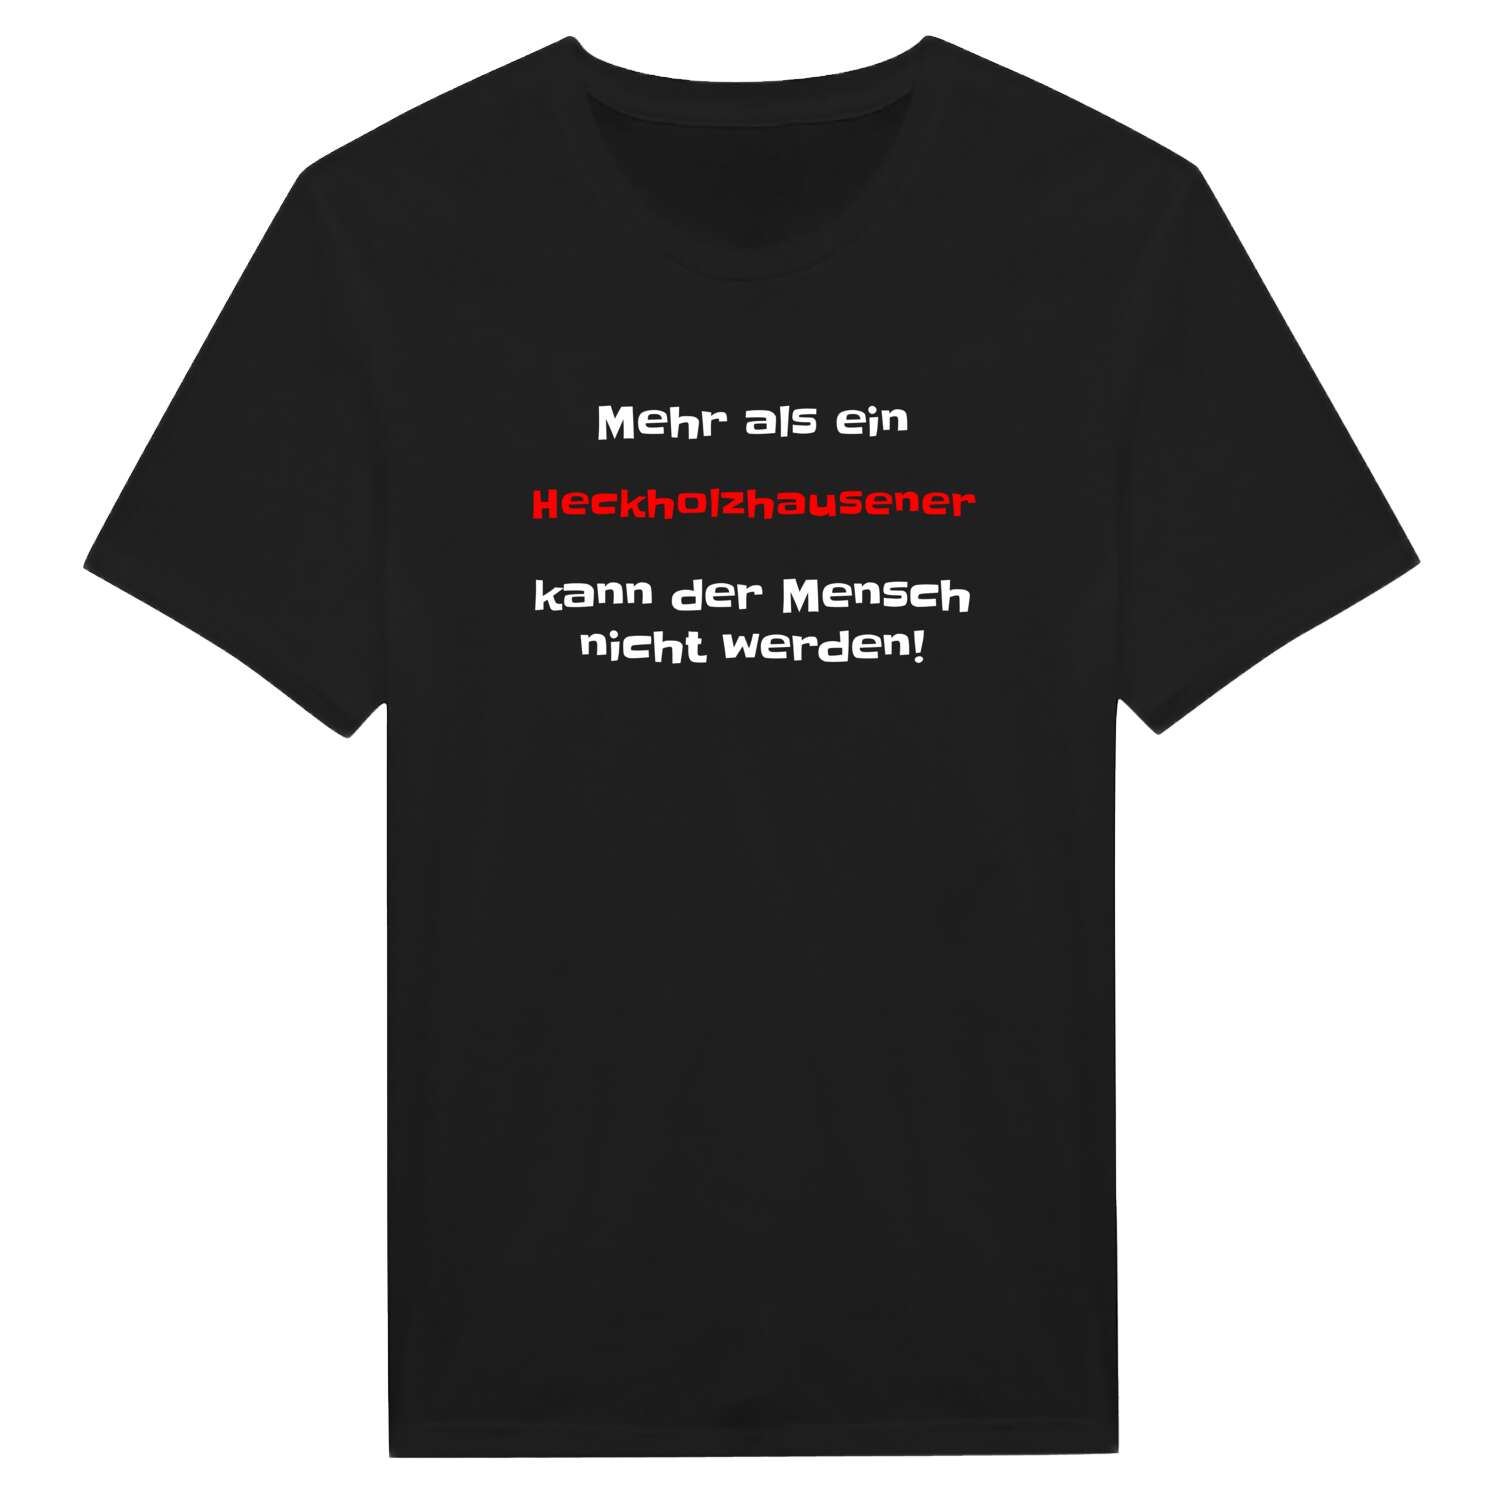 Heckholzhausen T-Shirt »Mehr als ein«